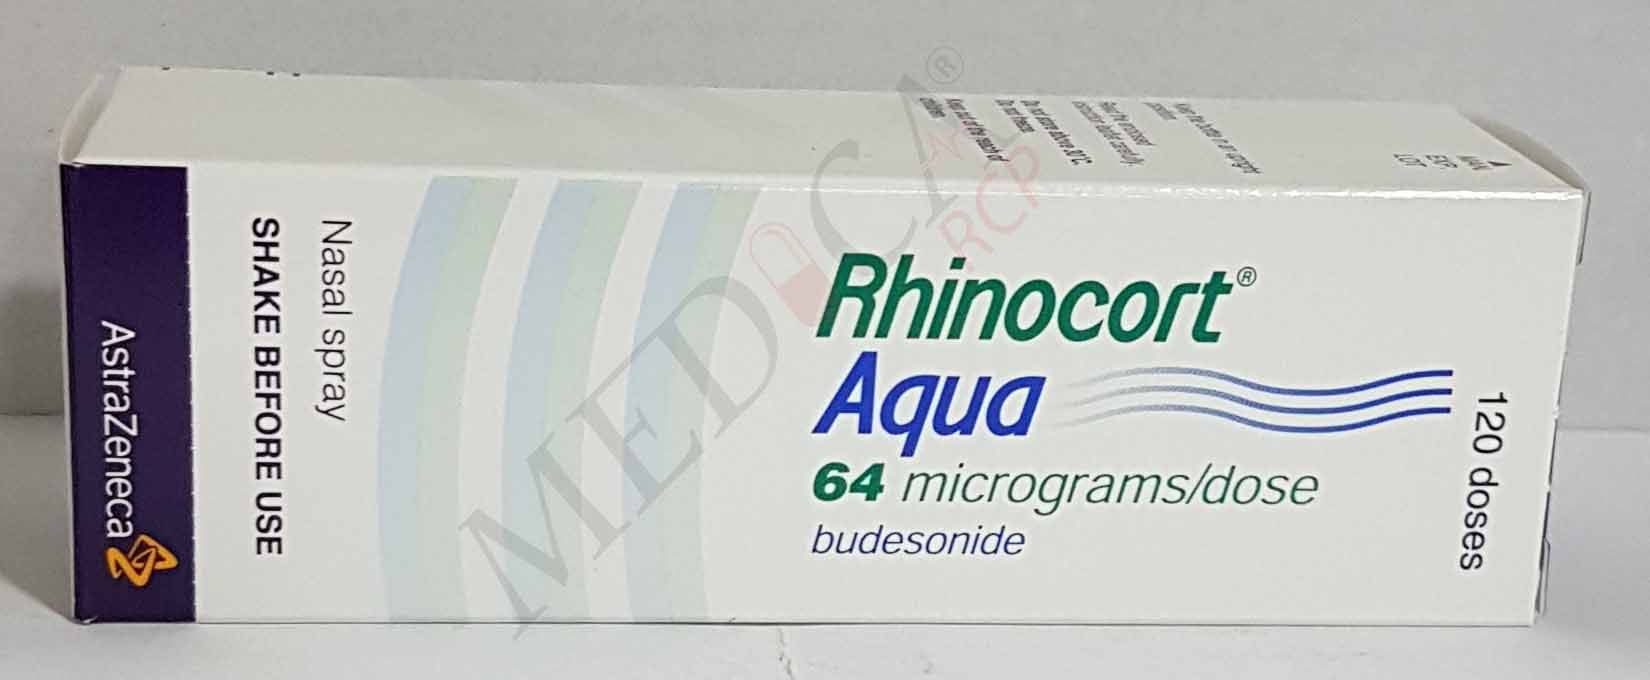 Rhinocort Aqua 64µg*